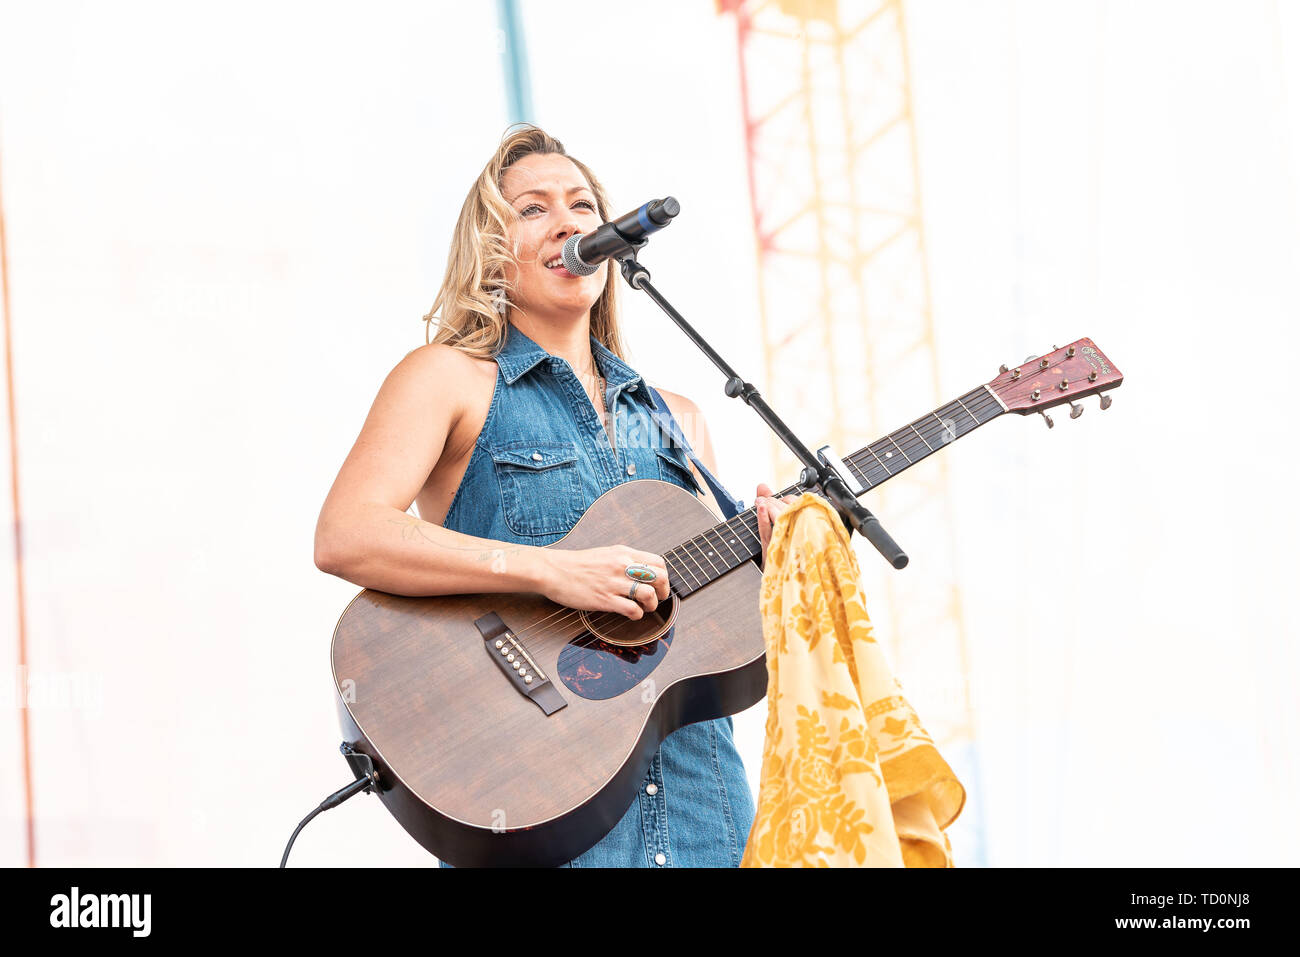 NASHVILLE, TENNESSEE - 09 juin : Colbie Caillat joue sur la scène pour le jour 4 de l'AMC 2019 Music Festival 09 Juin, 2019 à Nashville, Tennessee. Photo : Andrew/MediaPunch Wendowski pour imageSPACE Banque D'Images